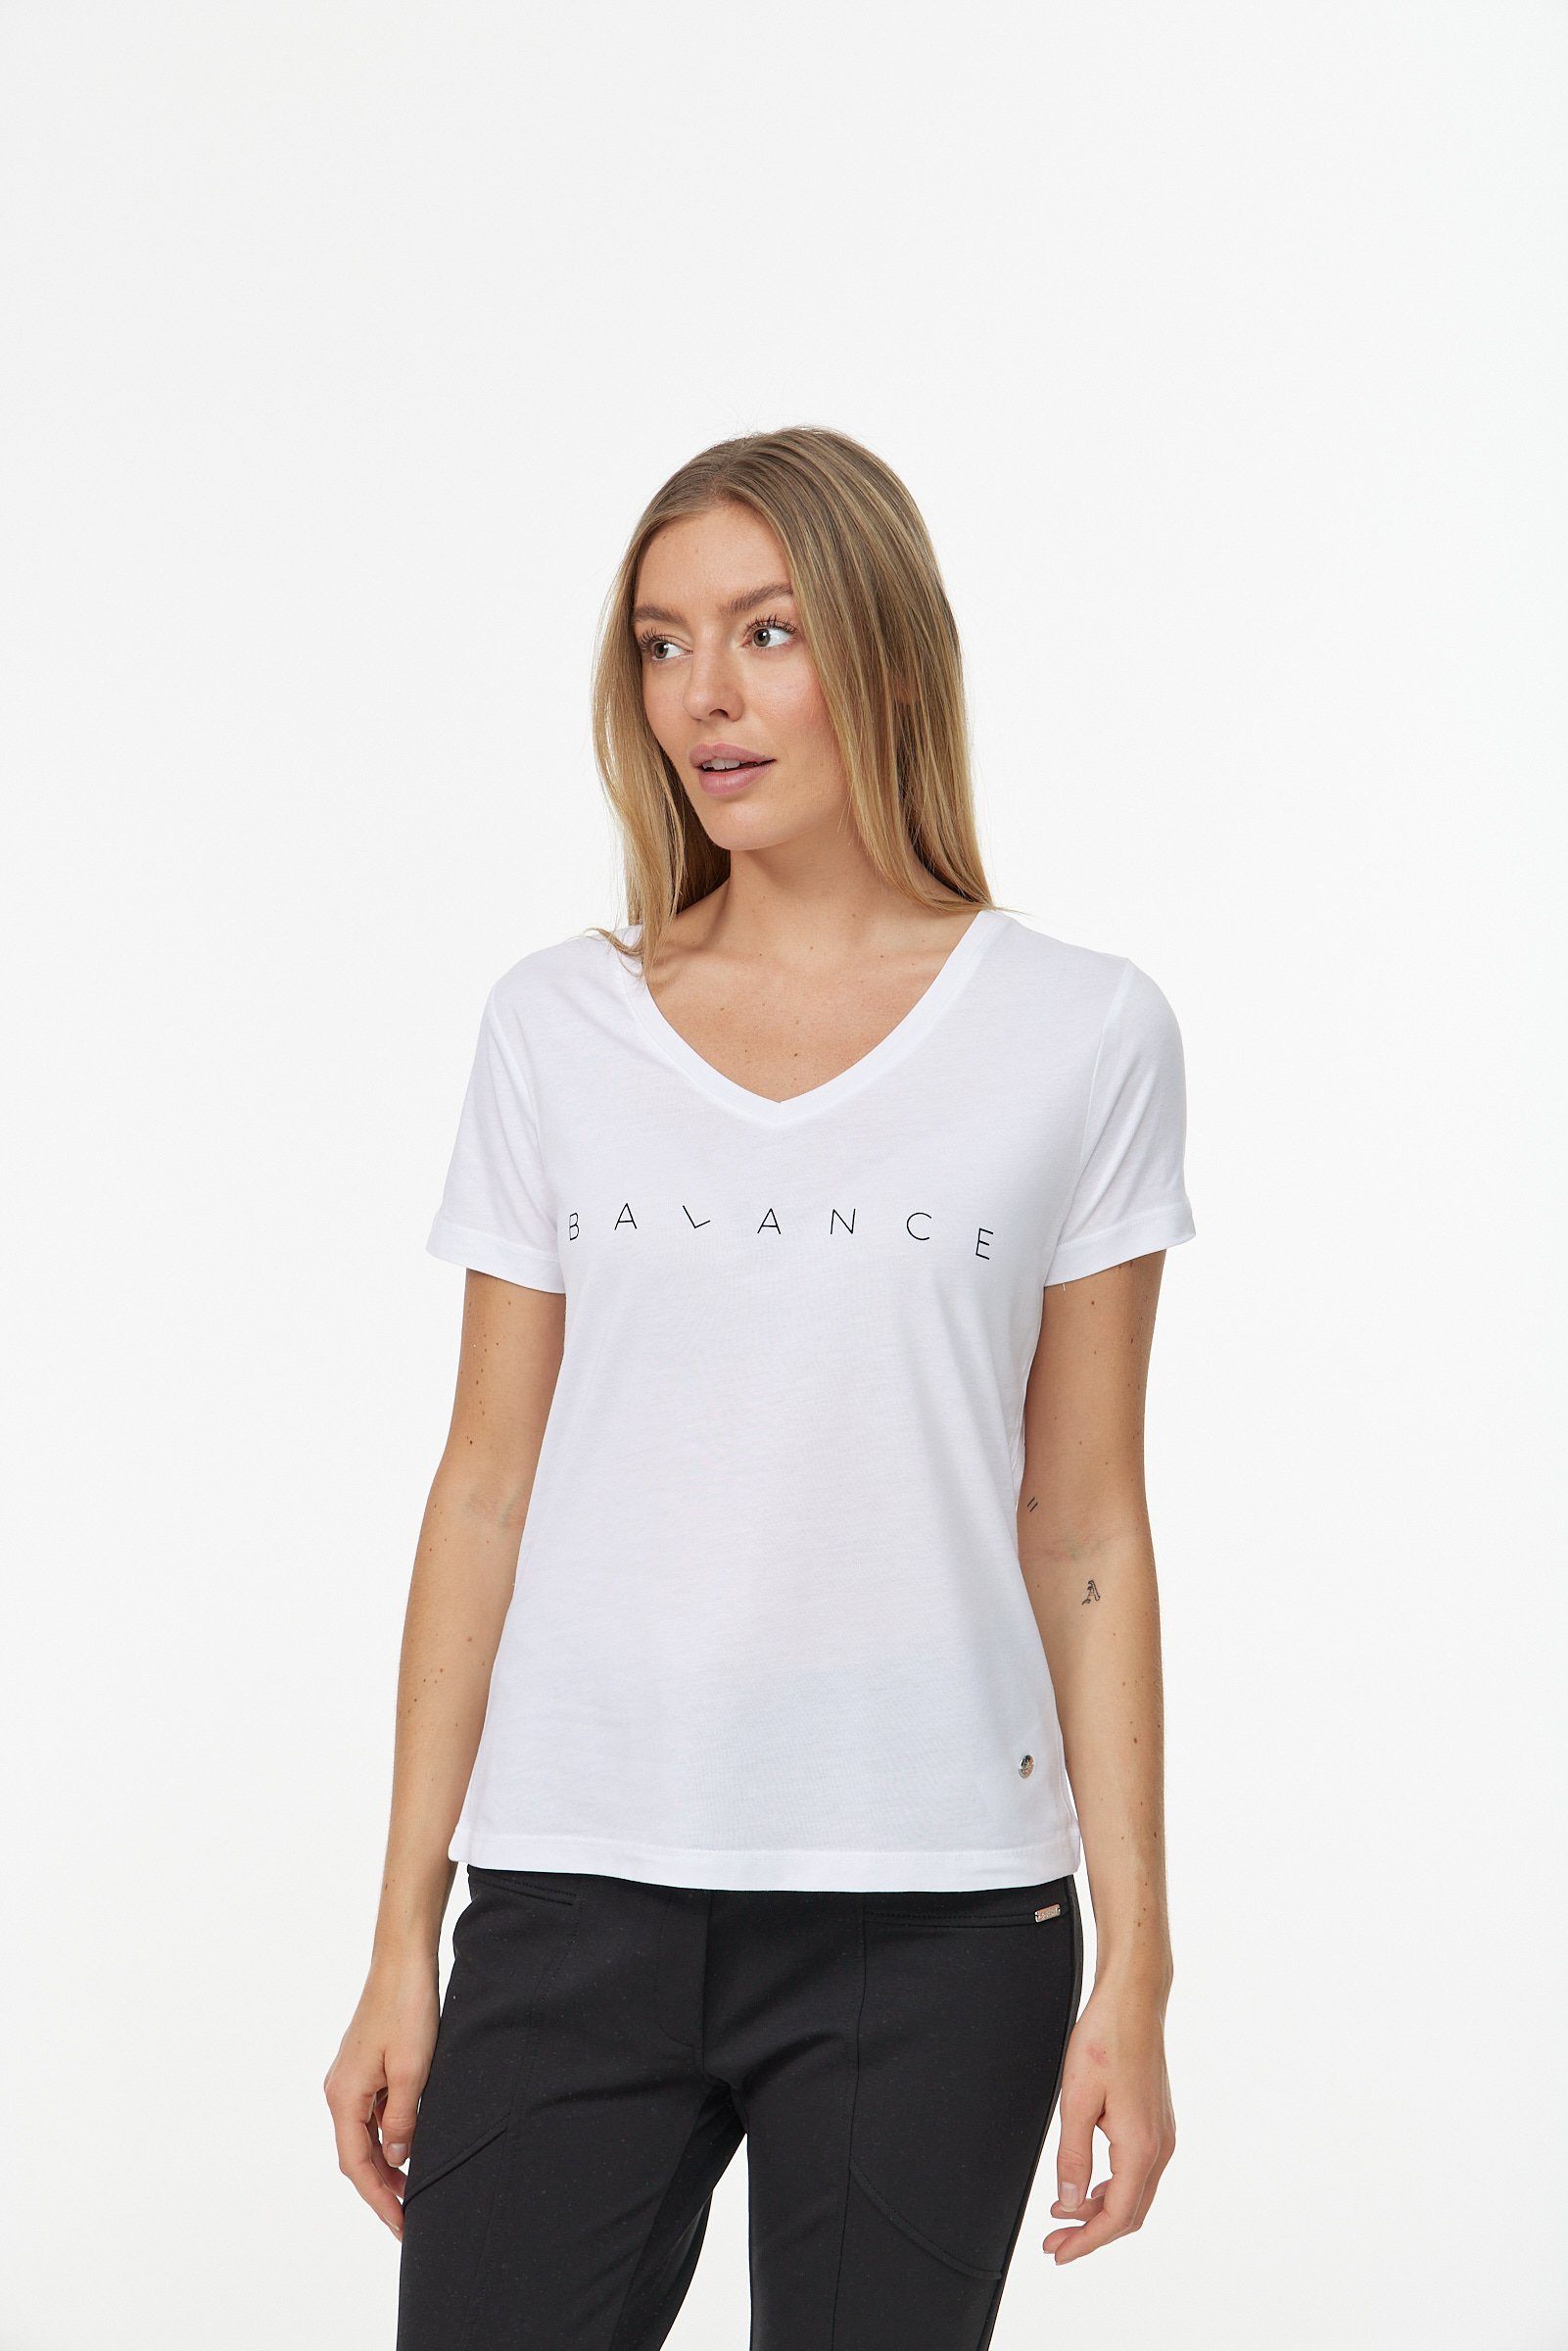 T-Shirt Decay in weiß-schwarz Design schlichtem